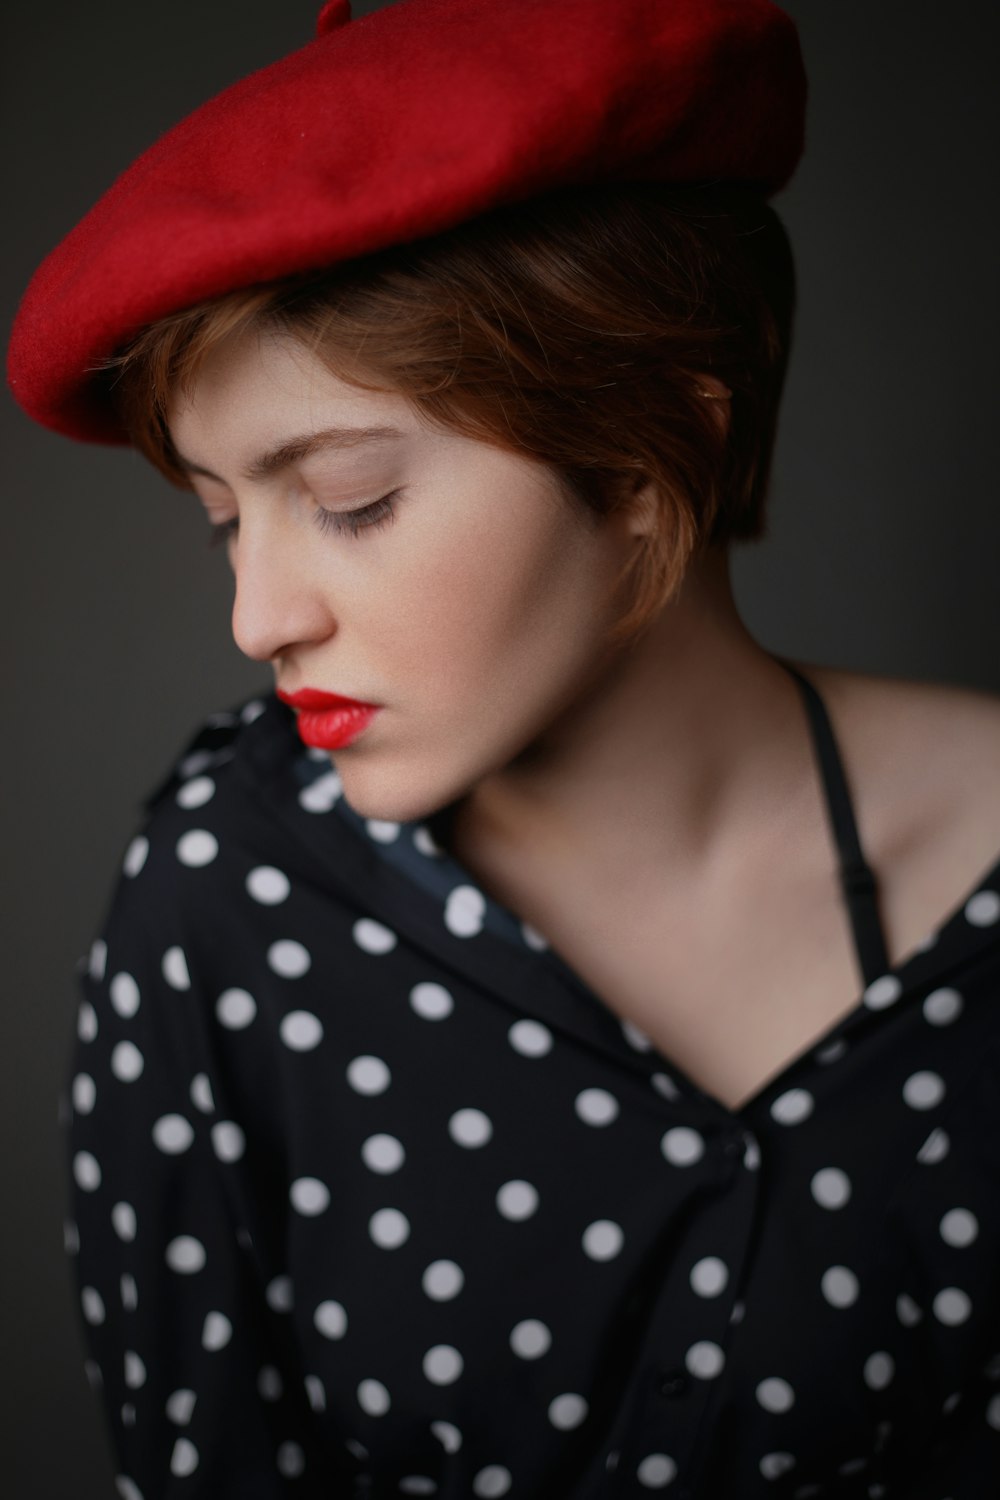 Frau mit rotem Zeitungsjungenhut und schwarz-weiß gepunktetem Button-up-Top